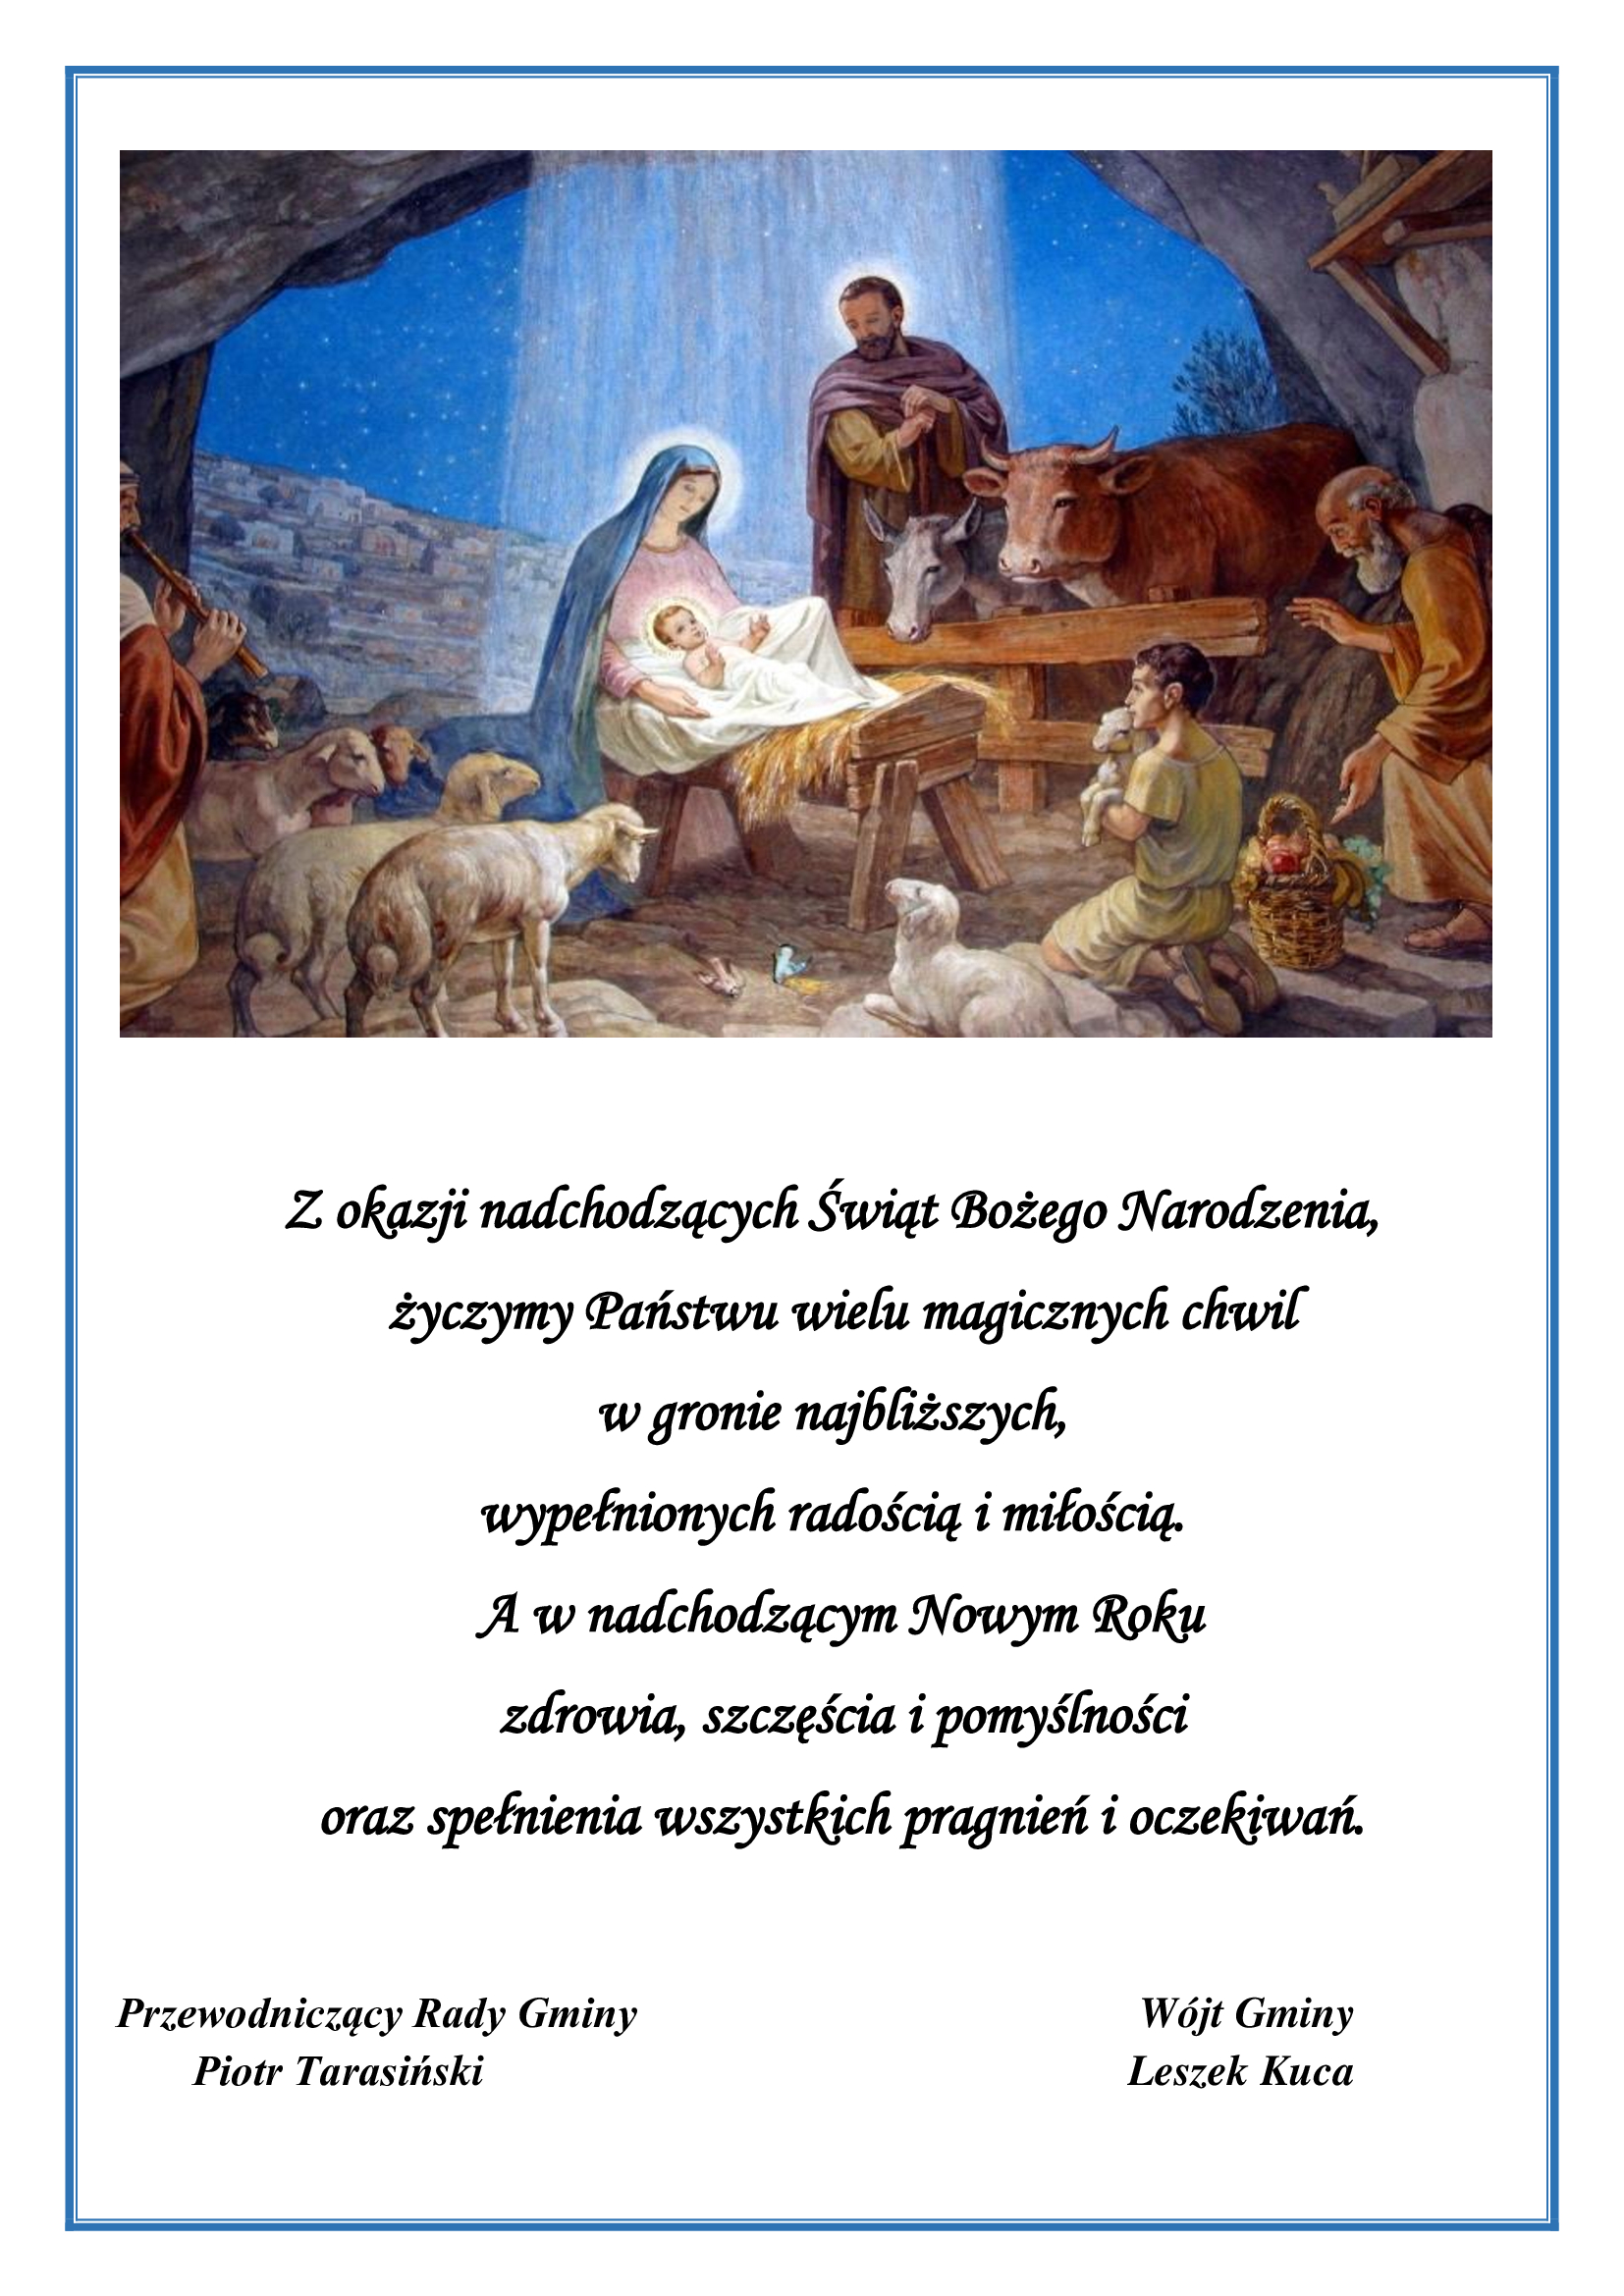 Życzenia świąteczne o poniższej treści. Z okazji nadchodzących Świąt Bożego Narodzenia, życzymy Państwu wielu magicznych chwil w gronie najbliższych, wypełnionych radością i miłością. A w nadchodzącym Nowym Roku zdrowia, szczęścia i pomyślności oraz spełnienia wszystkich pragnień i oczekiwań. Życzą Przewodniczący Rady Gminy Piotr Tarasiński oraz Wójt Gminy Leszek Kuca. Powyżej życzeń obraz Świętej Rodziny w szopie po narodzinach Jezusa, oraz zwierząt, które zbierają się przy żłobie, w którym leży Pan Jezus.